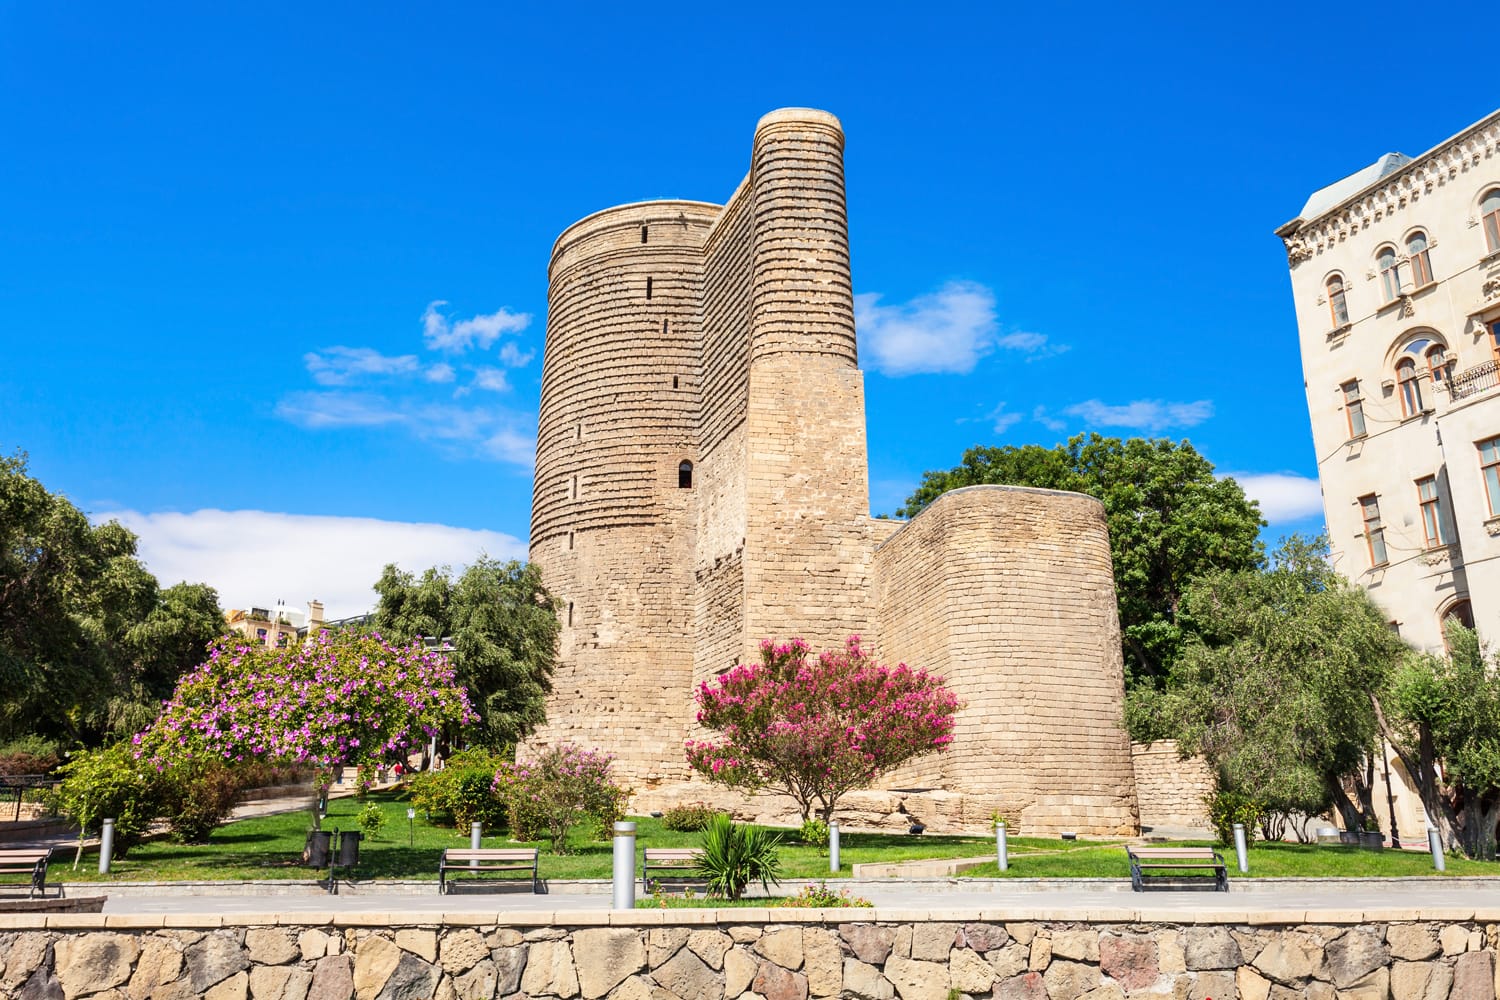 Menara Gadis juga dikenal sebagai Giz Galasi, terletak di Kota Tua Baku, Azerbaijan.  Tower of the Maiden dibangun pada abad ke-12 sebagai bagian dari kota bertembok.